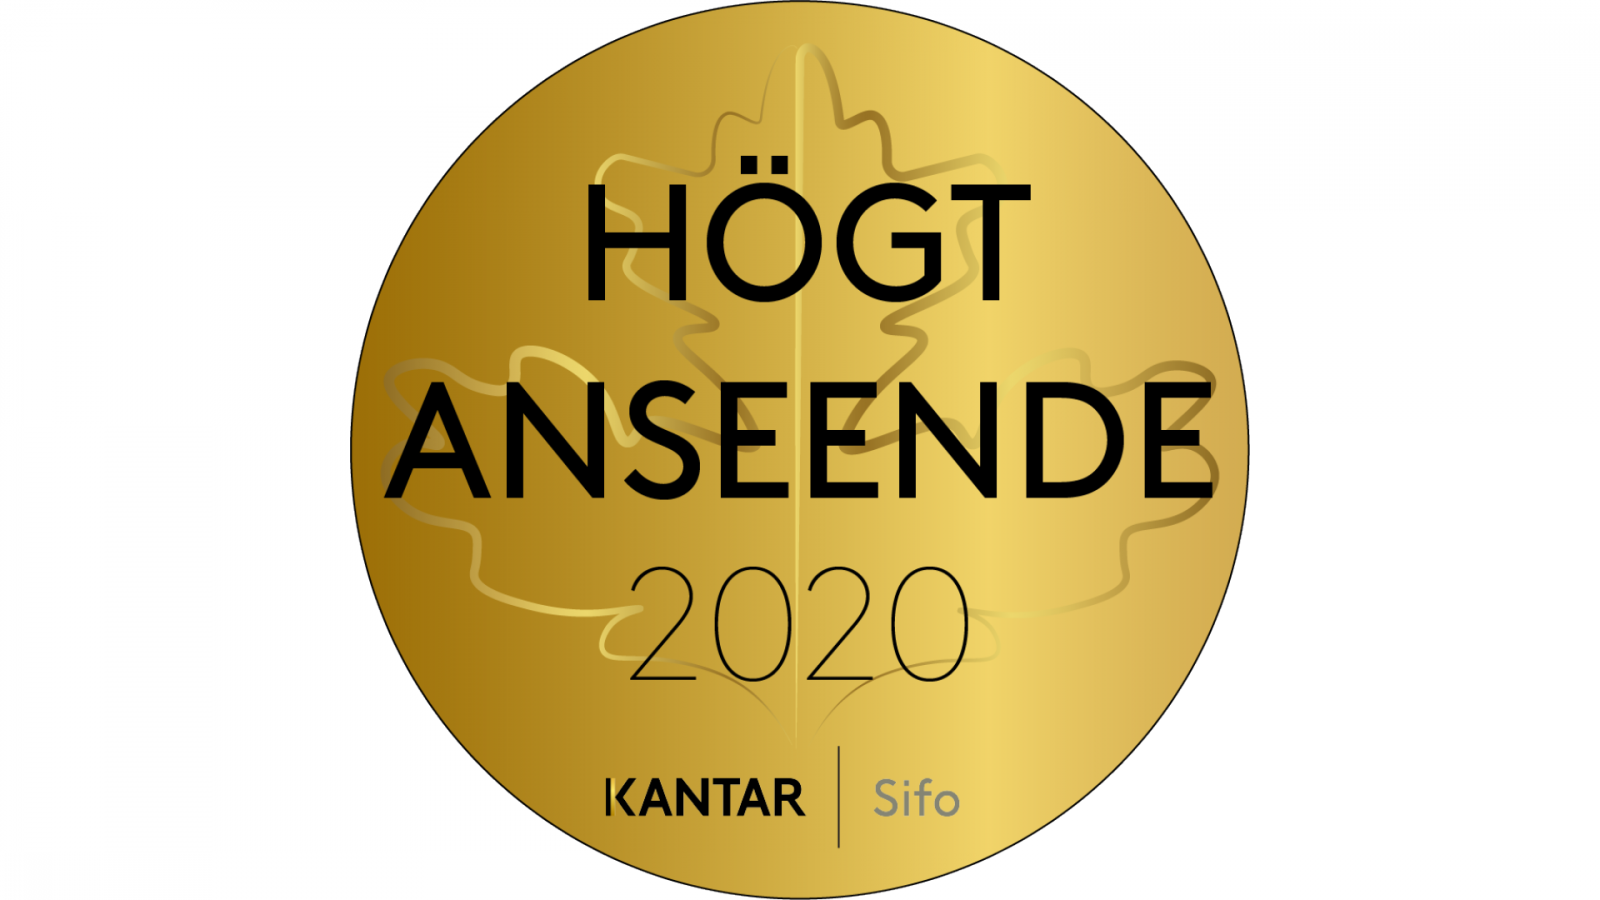 Guldmedalj med orden "Högt anseende 2020" samt "Kantar Sifo".